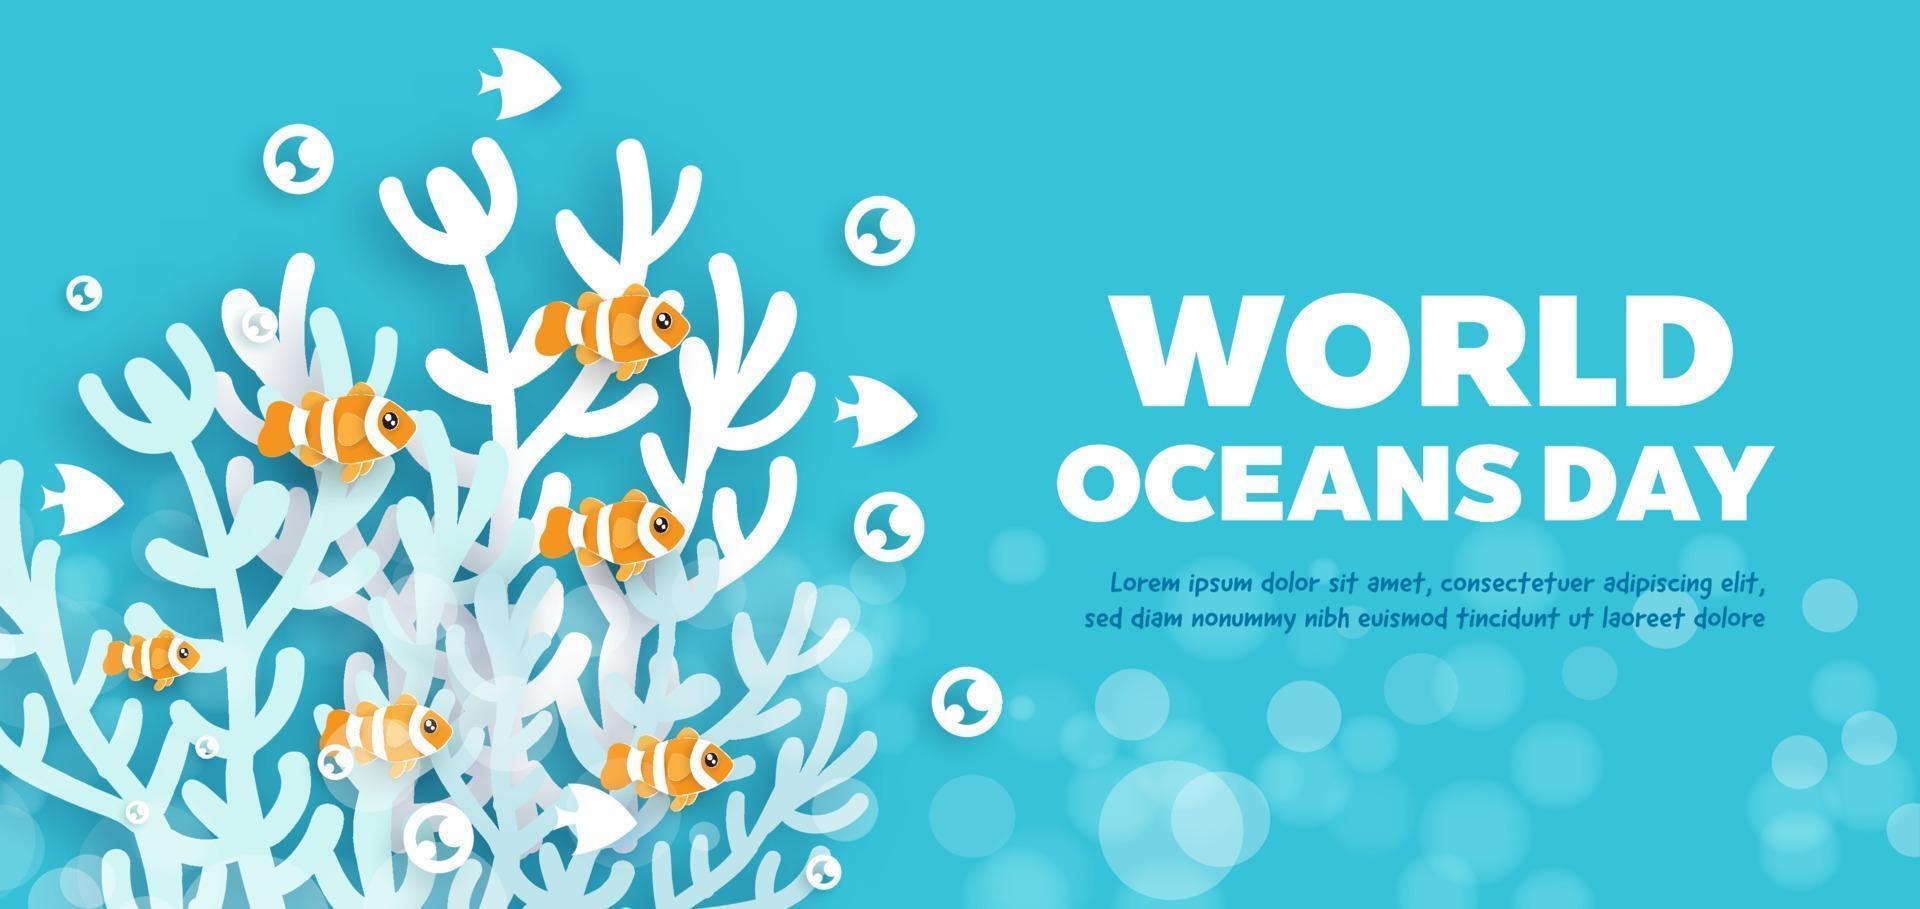 banner do dia dos oceanos do mundo com golfinho fofo no estilo de corte de papel. vetor